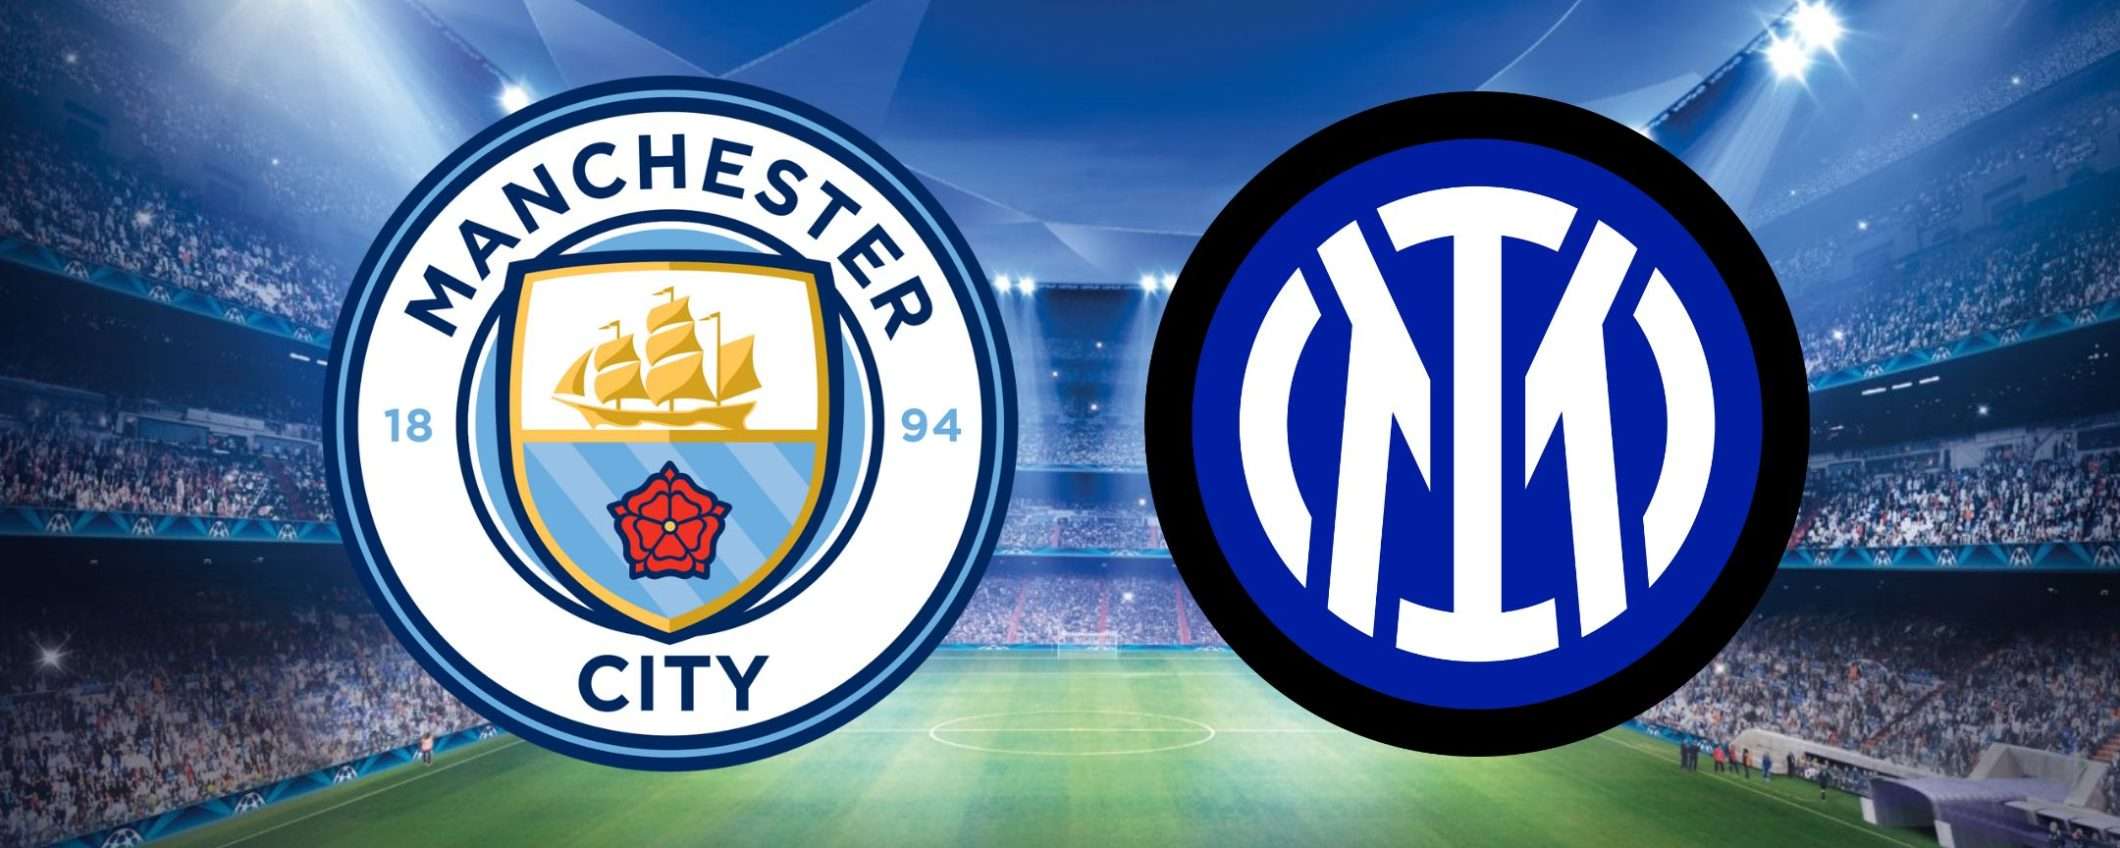 Manchester City-Inter: come guardare la finale in streaming